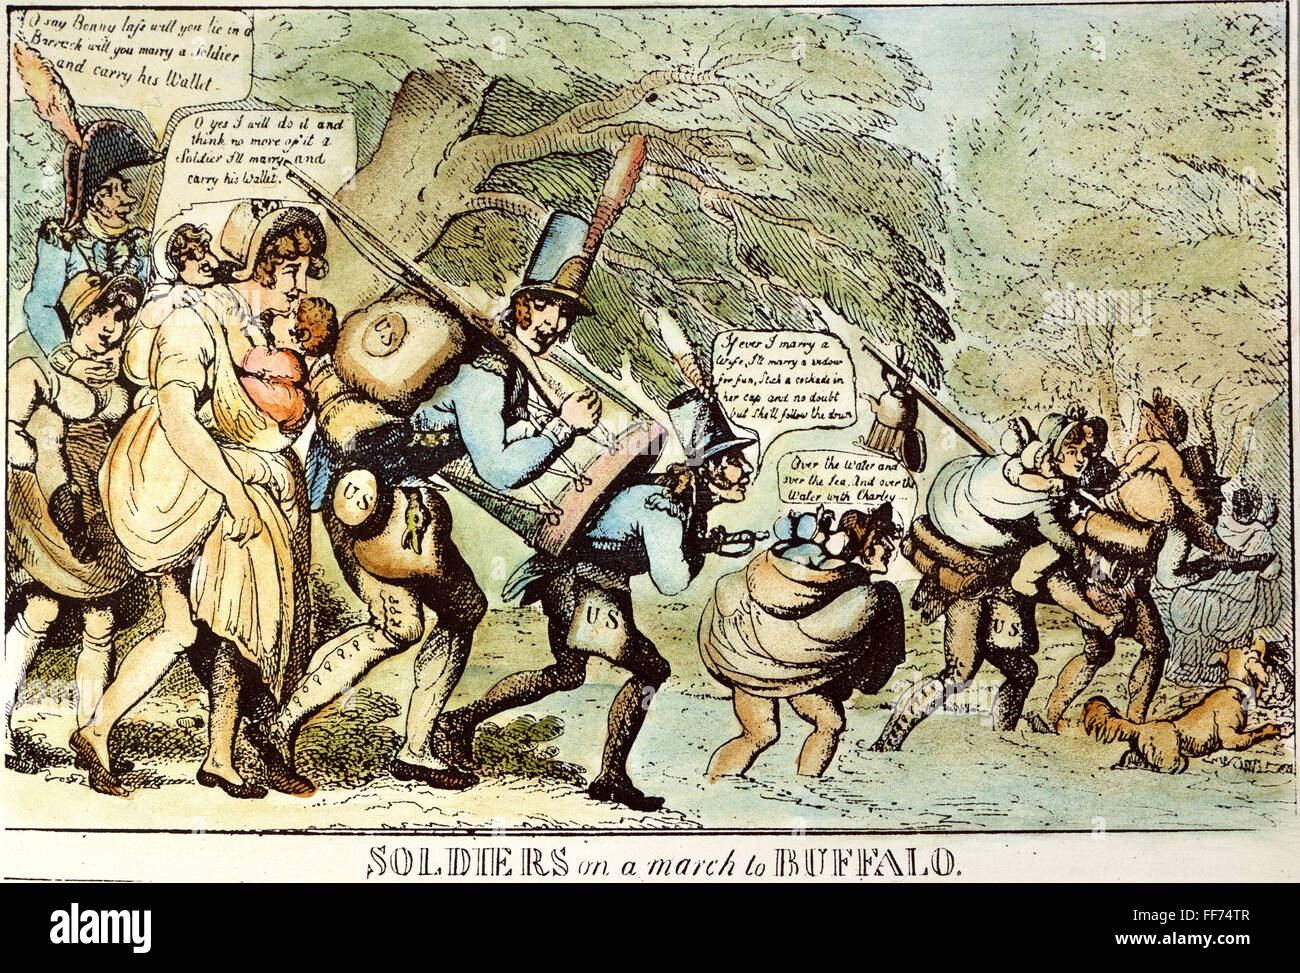 Guerra de 1812: Cartoon, 1813. /NSoldiers en marzo a Buffalo: cartoon, de 1813, por William Charles satirizando (New York State) soldados marchando al frente durante la guerra de 1812 ocupados por sus mujeres, bebés y enseres domésticos. Foto de stock